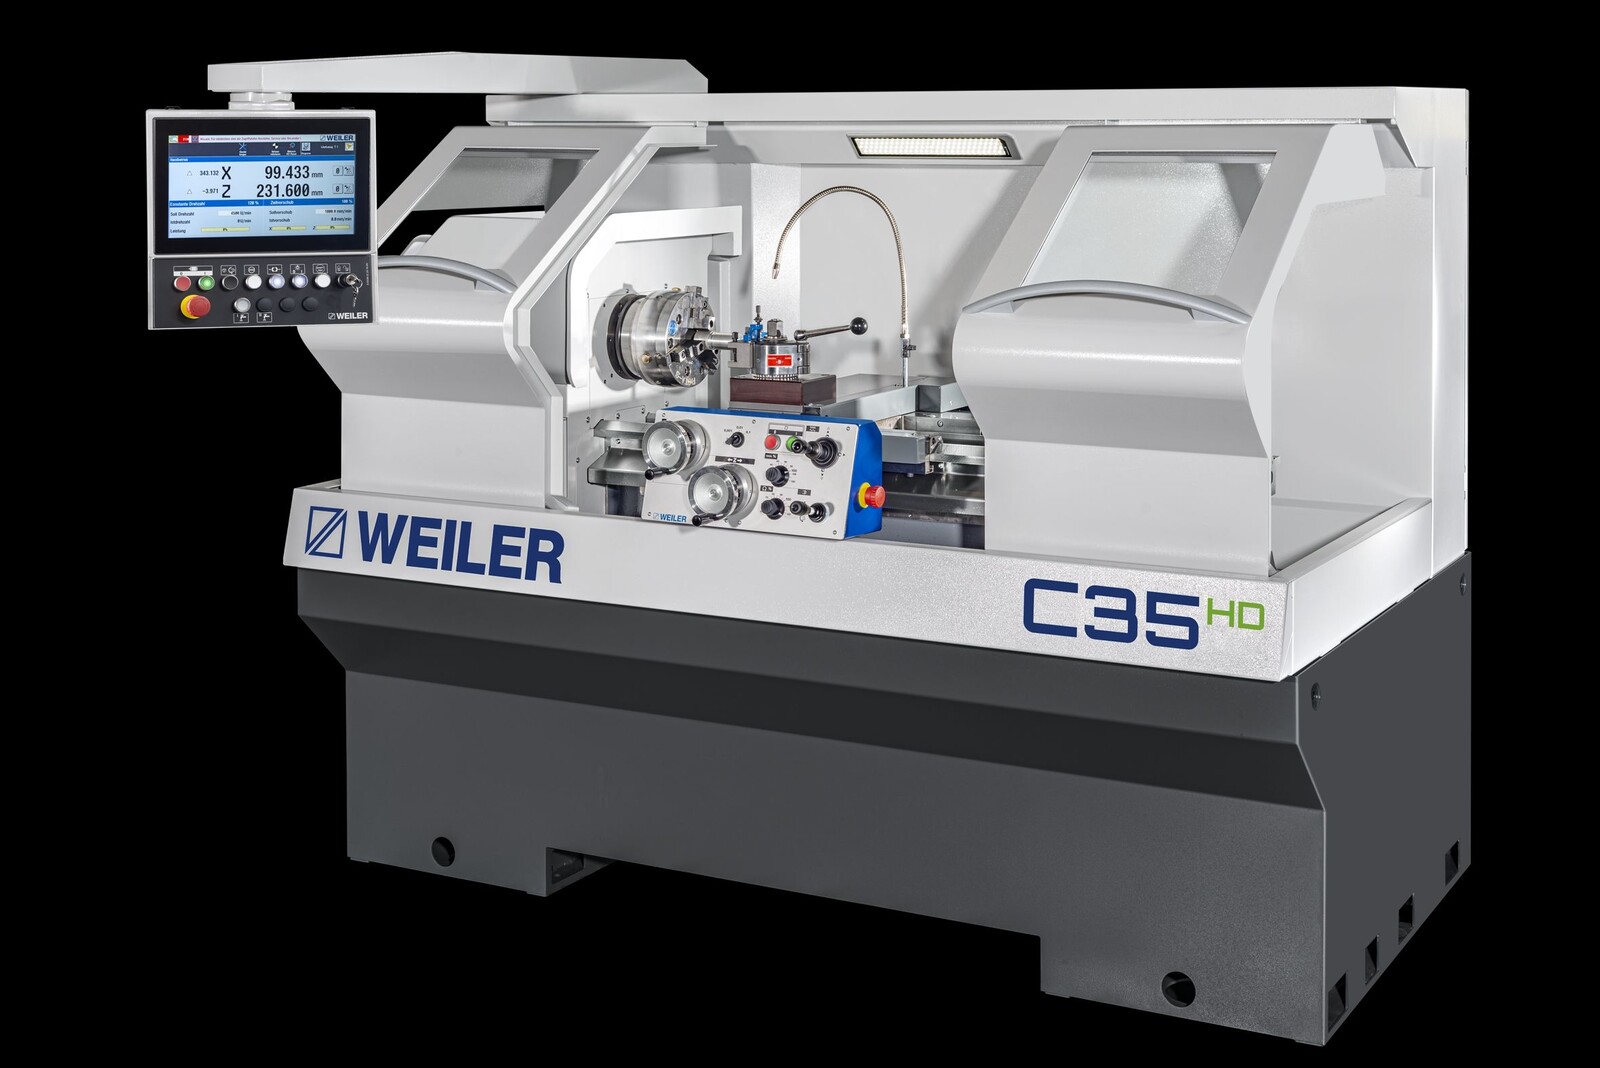 Die neue servokonventionelle Präzisions-Drehmaschine C35HD von Weiler vereint Leistung, Flexibilität und Energieeffizienz.